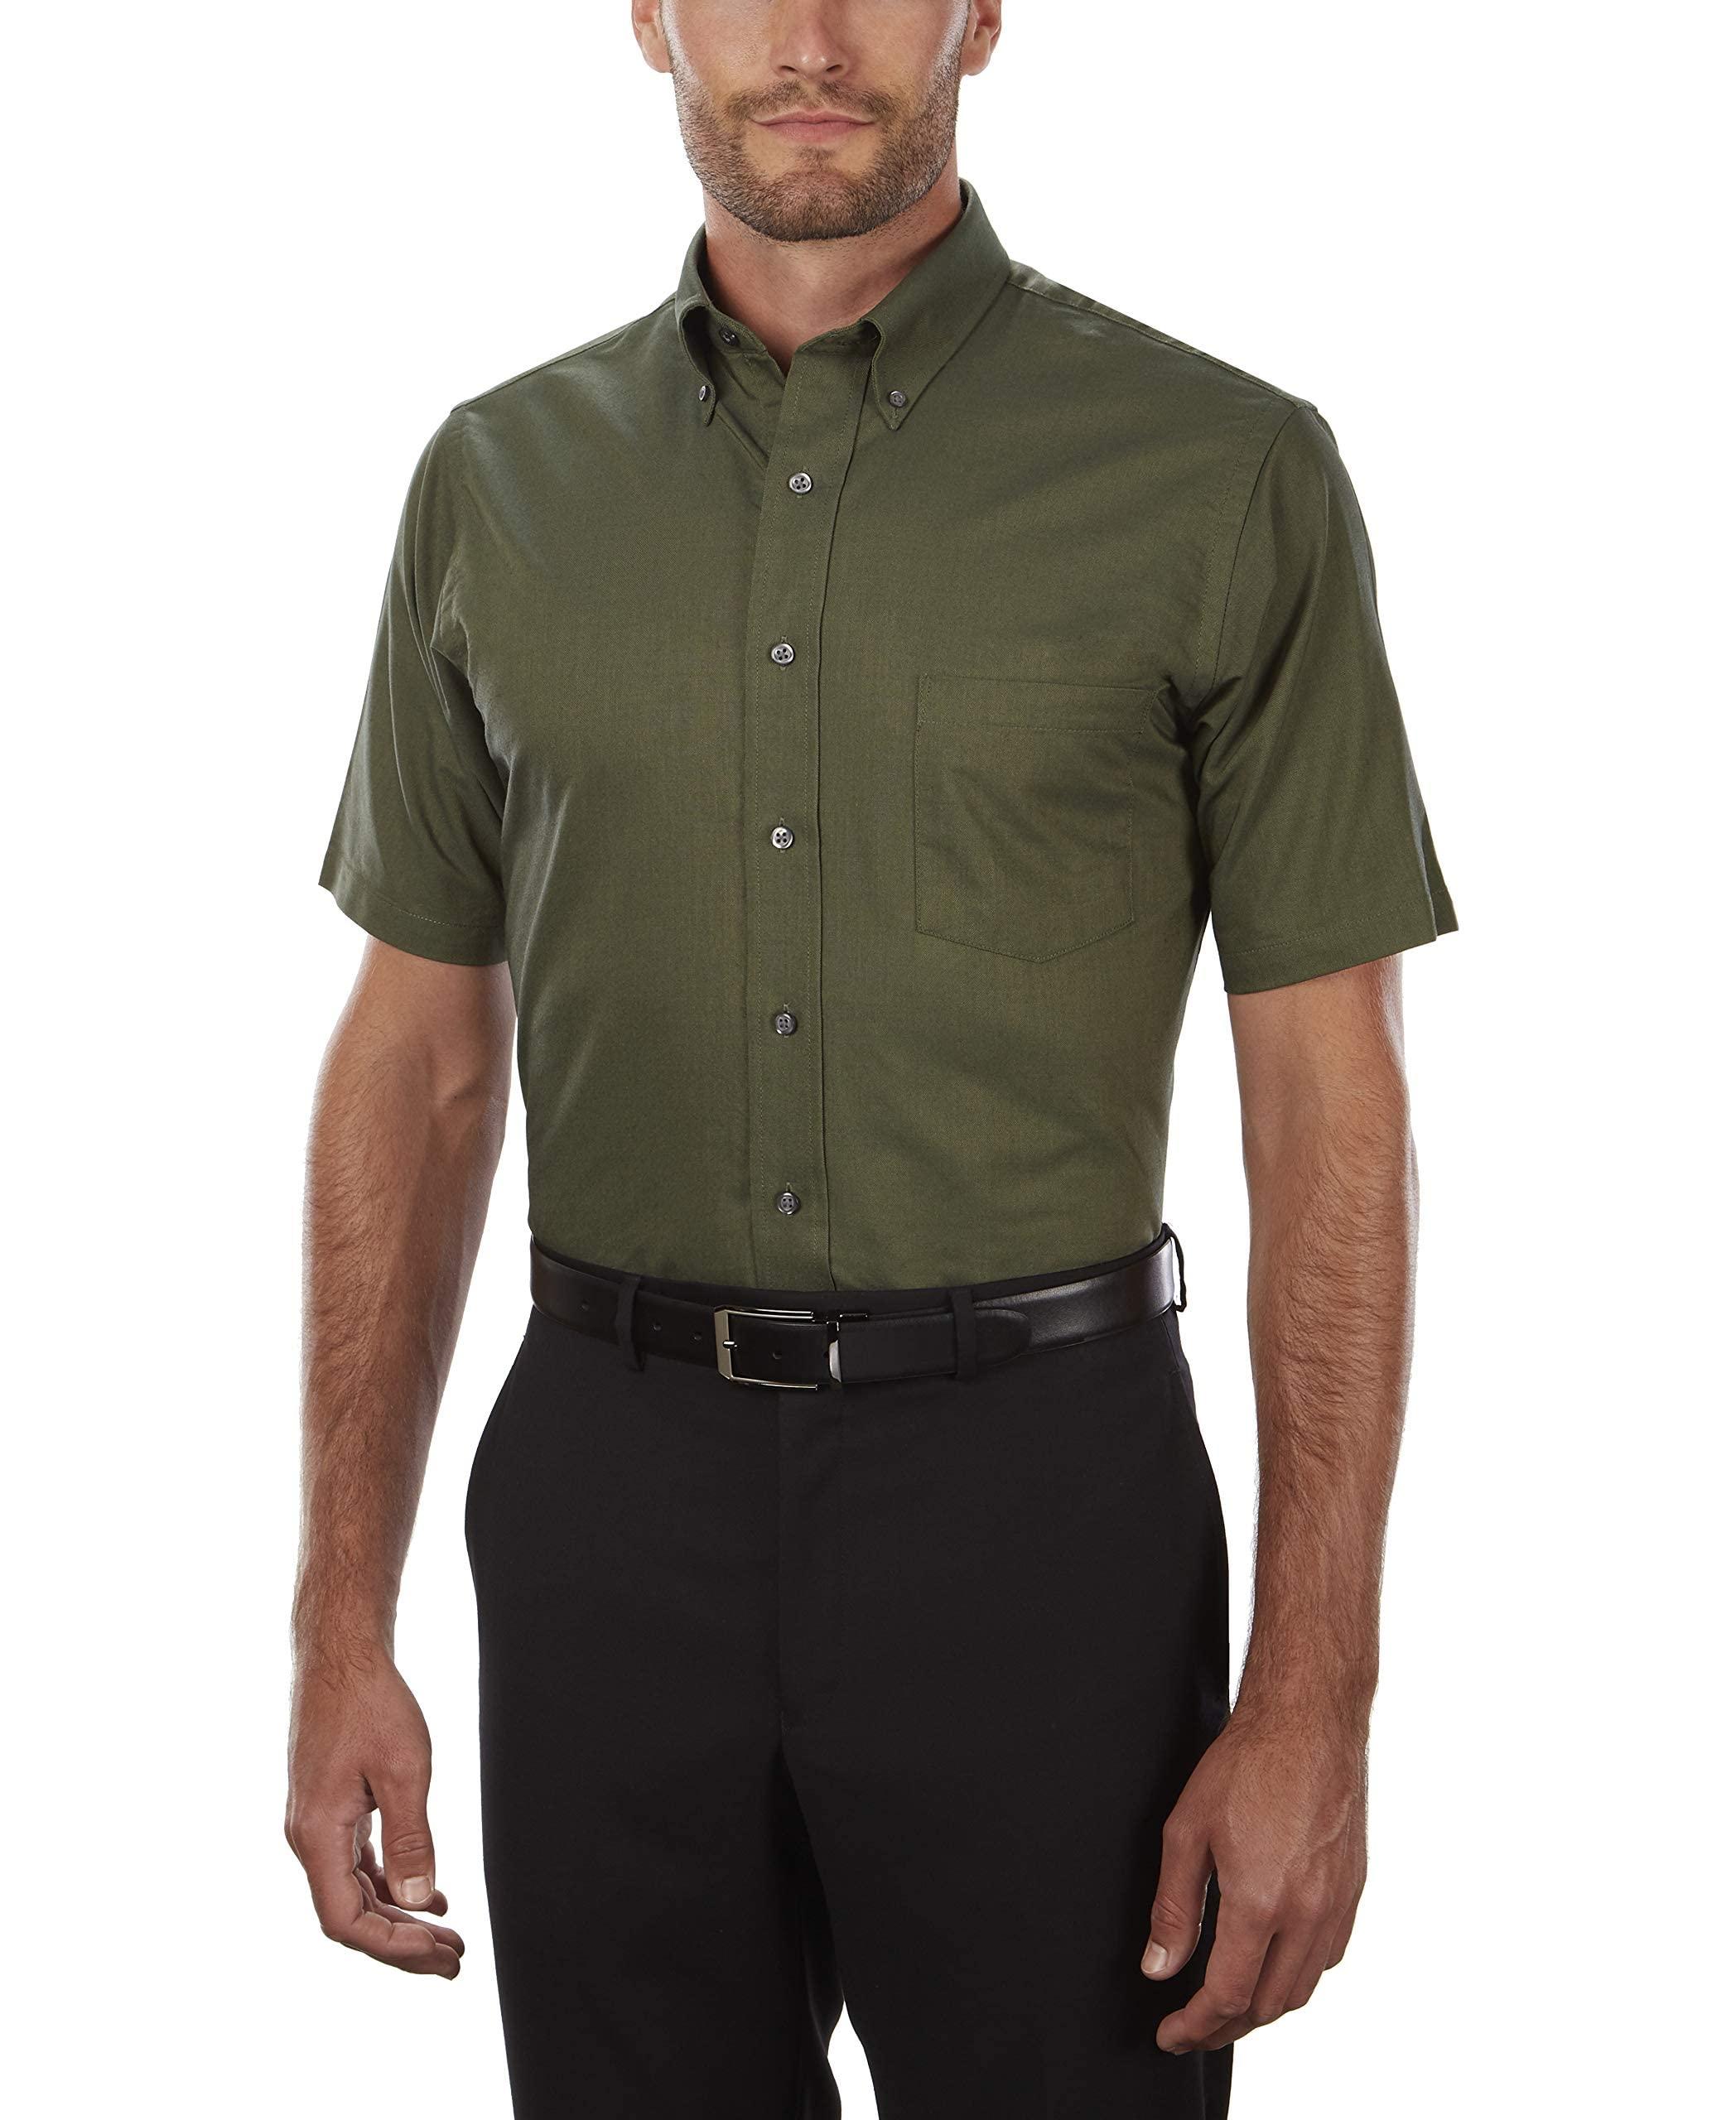 Van Heusen Men Short-Sleeve Wrinkle-Resistant Oxford (56850) - Dark green - XX-Large